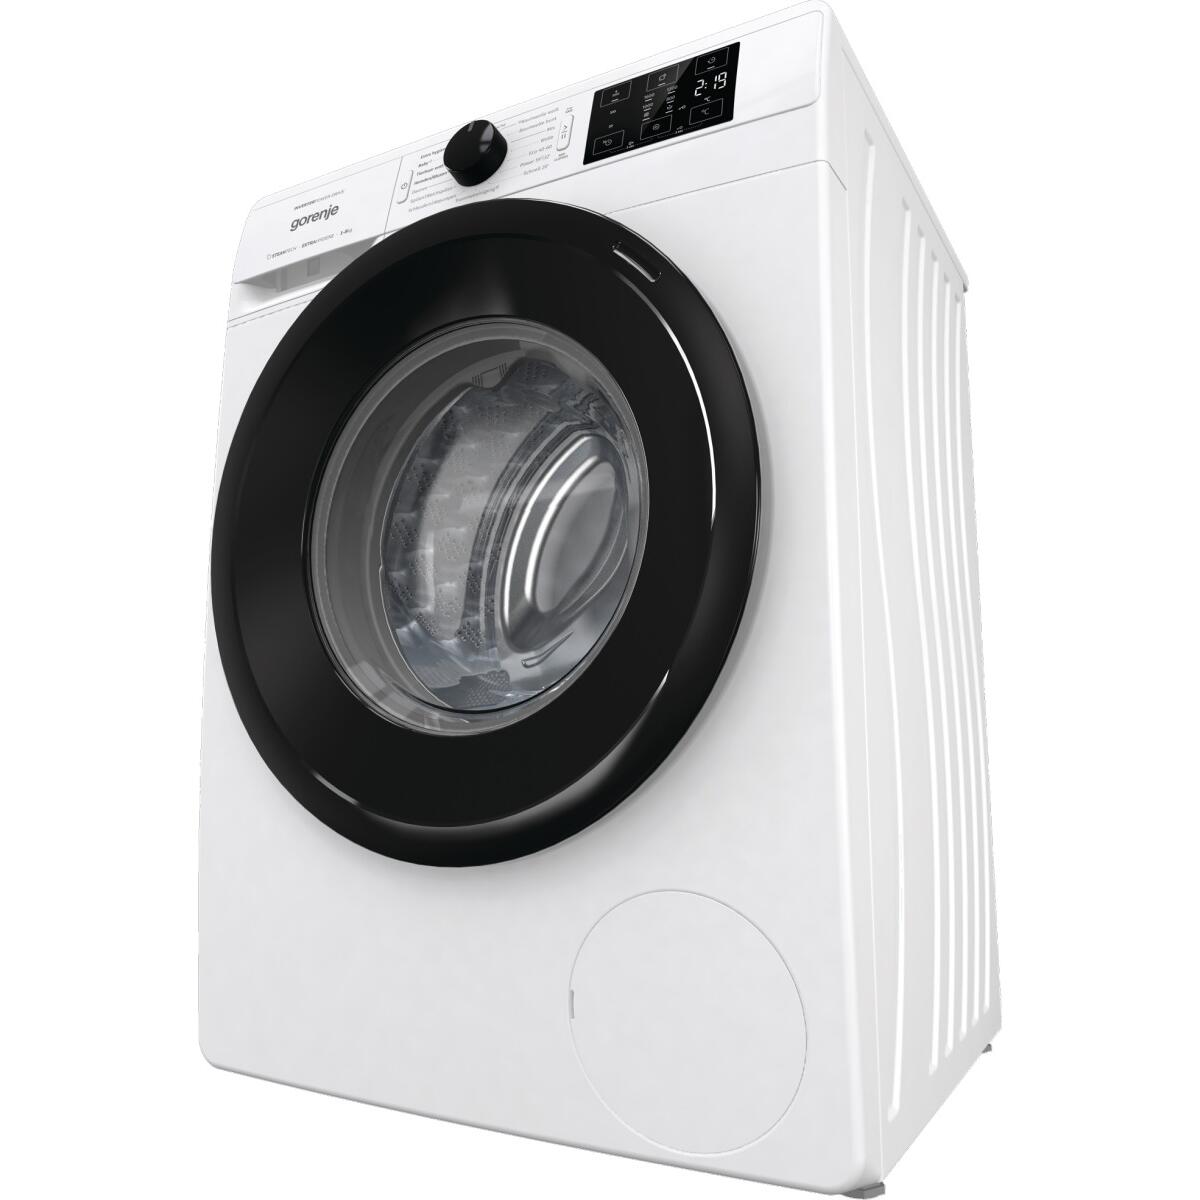 Wagner Waschmaschine, Gorenje Dampffunktion, 1600U/Min, 60cm Display, breit, WNEI86APS Elektroshop Frontlader Kindersicherung, LED Weiß 8kg 3-teilige Waschmittelschublade,